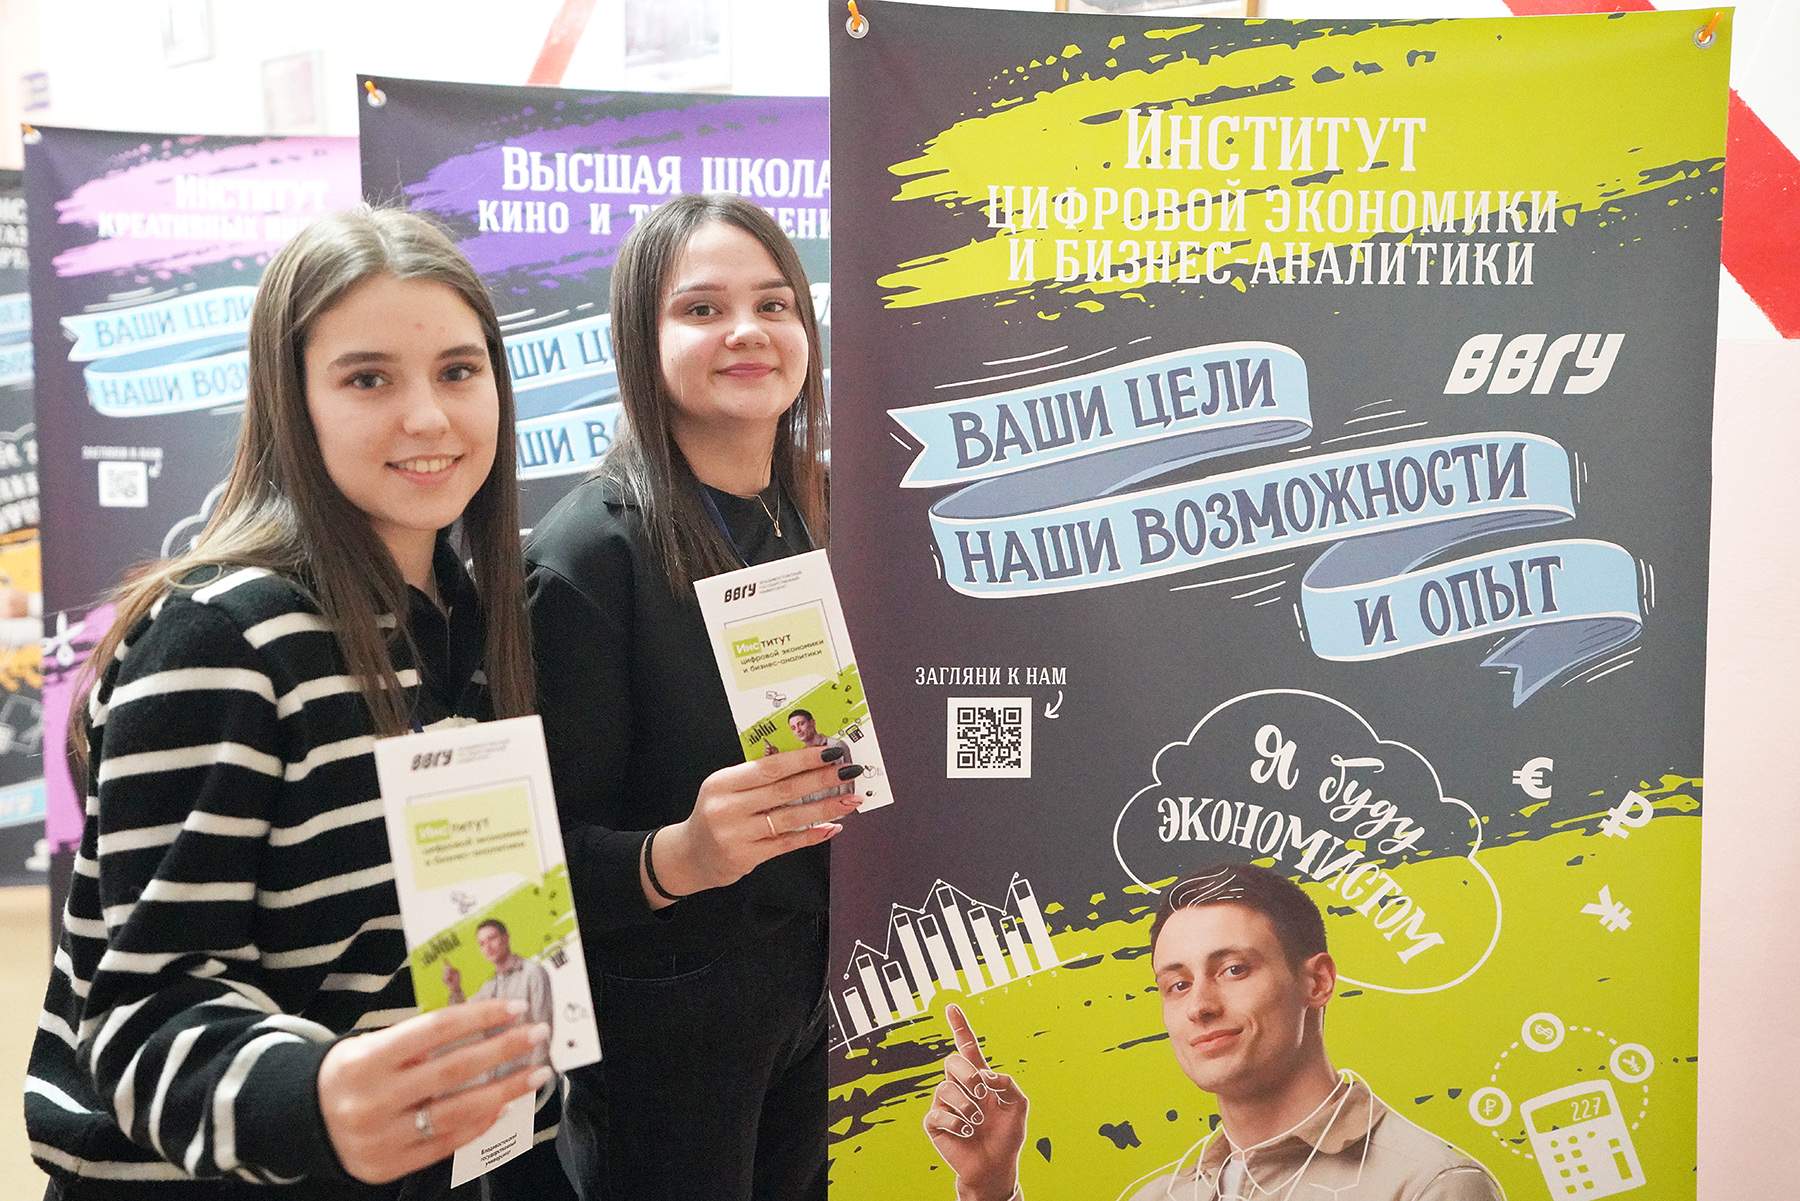 ВВГУ сообщил будущим абитуриентам Владивостока о новых правилах поступления